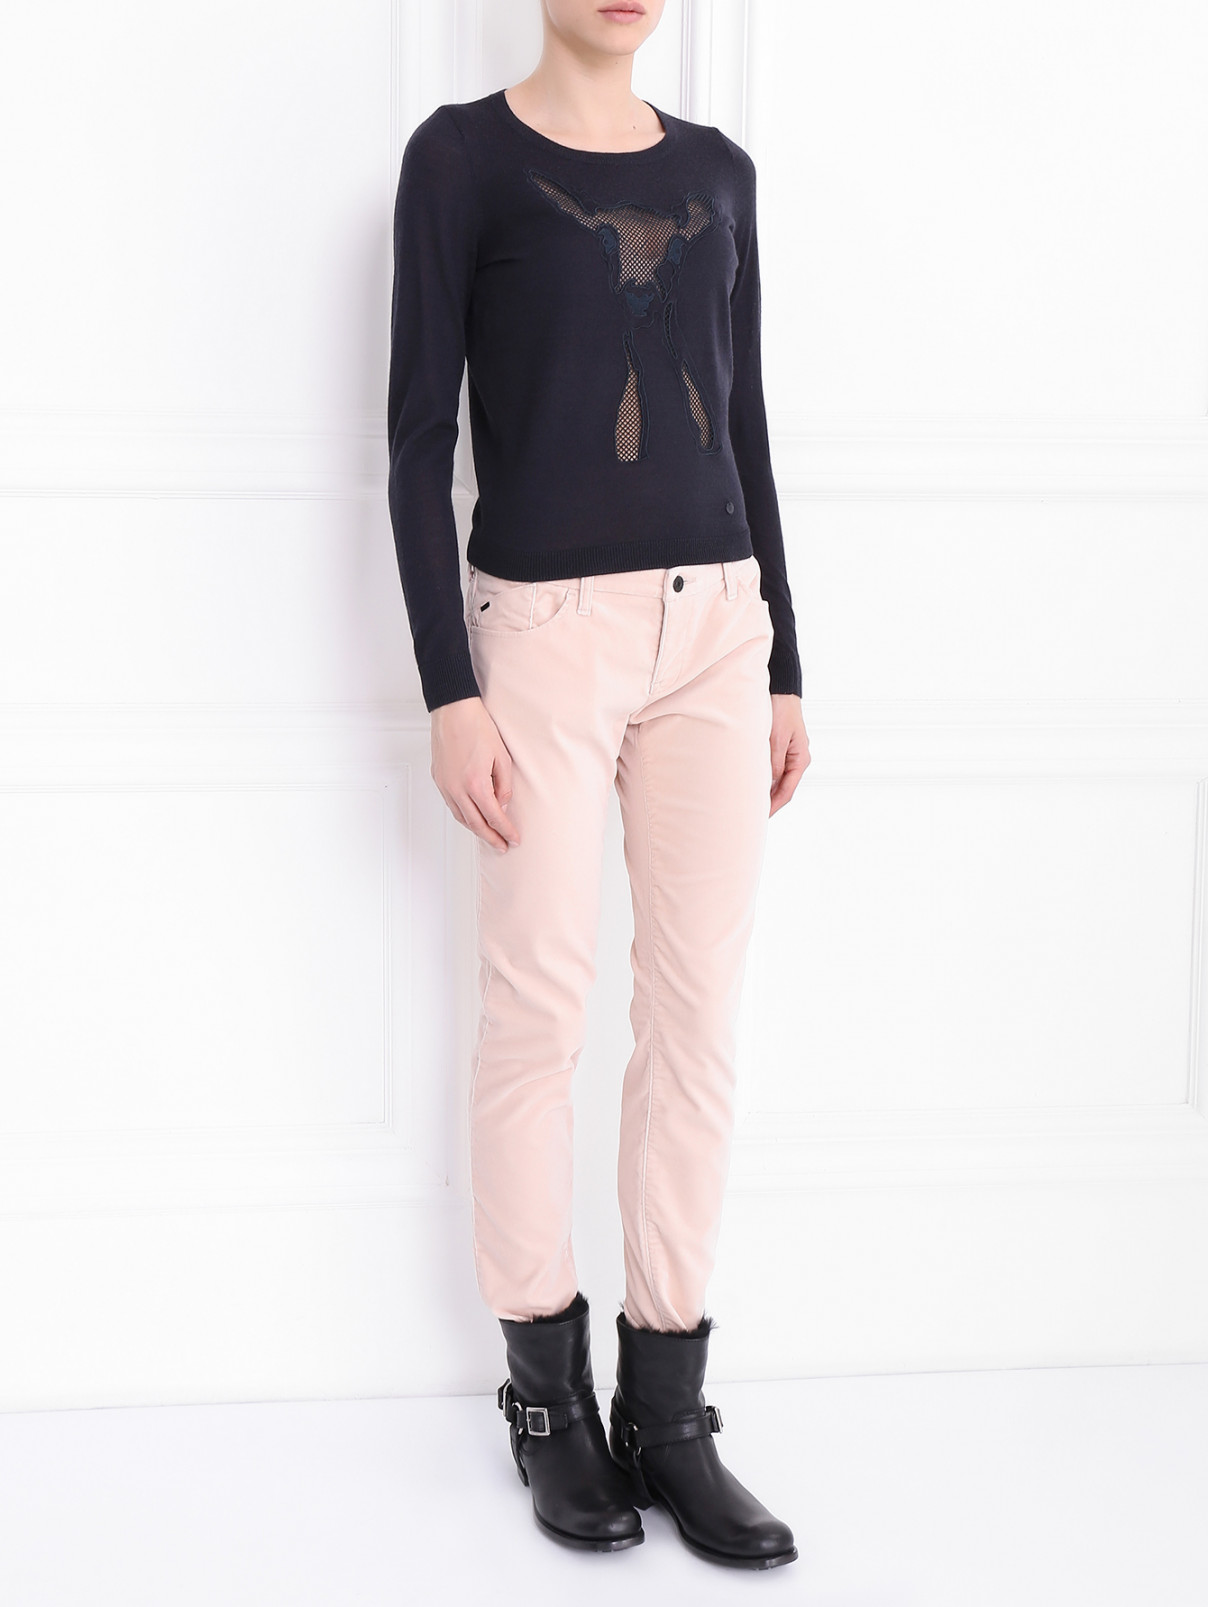 Джемпер из шерсти с аппликацией Armani Jeans  –  Модель Общий вид  – Цвет:  Черный